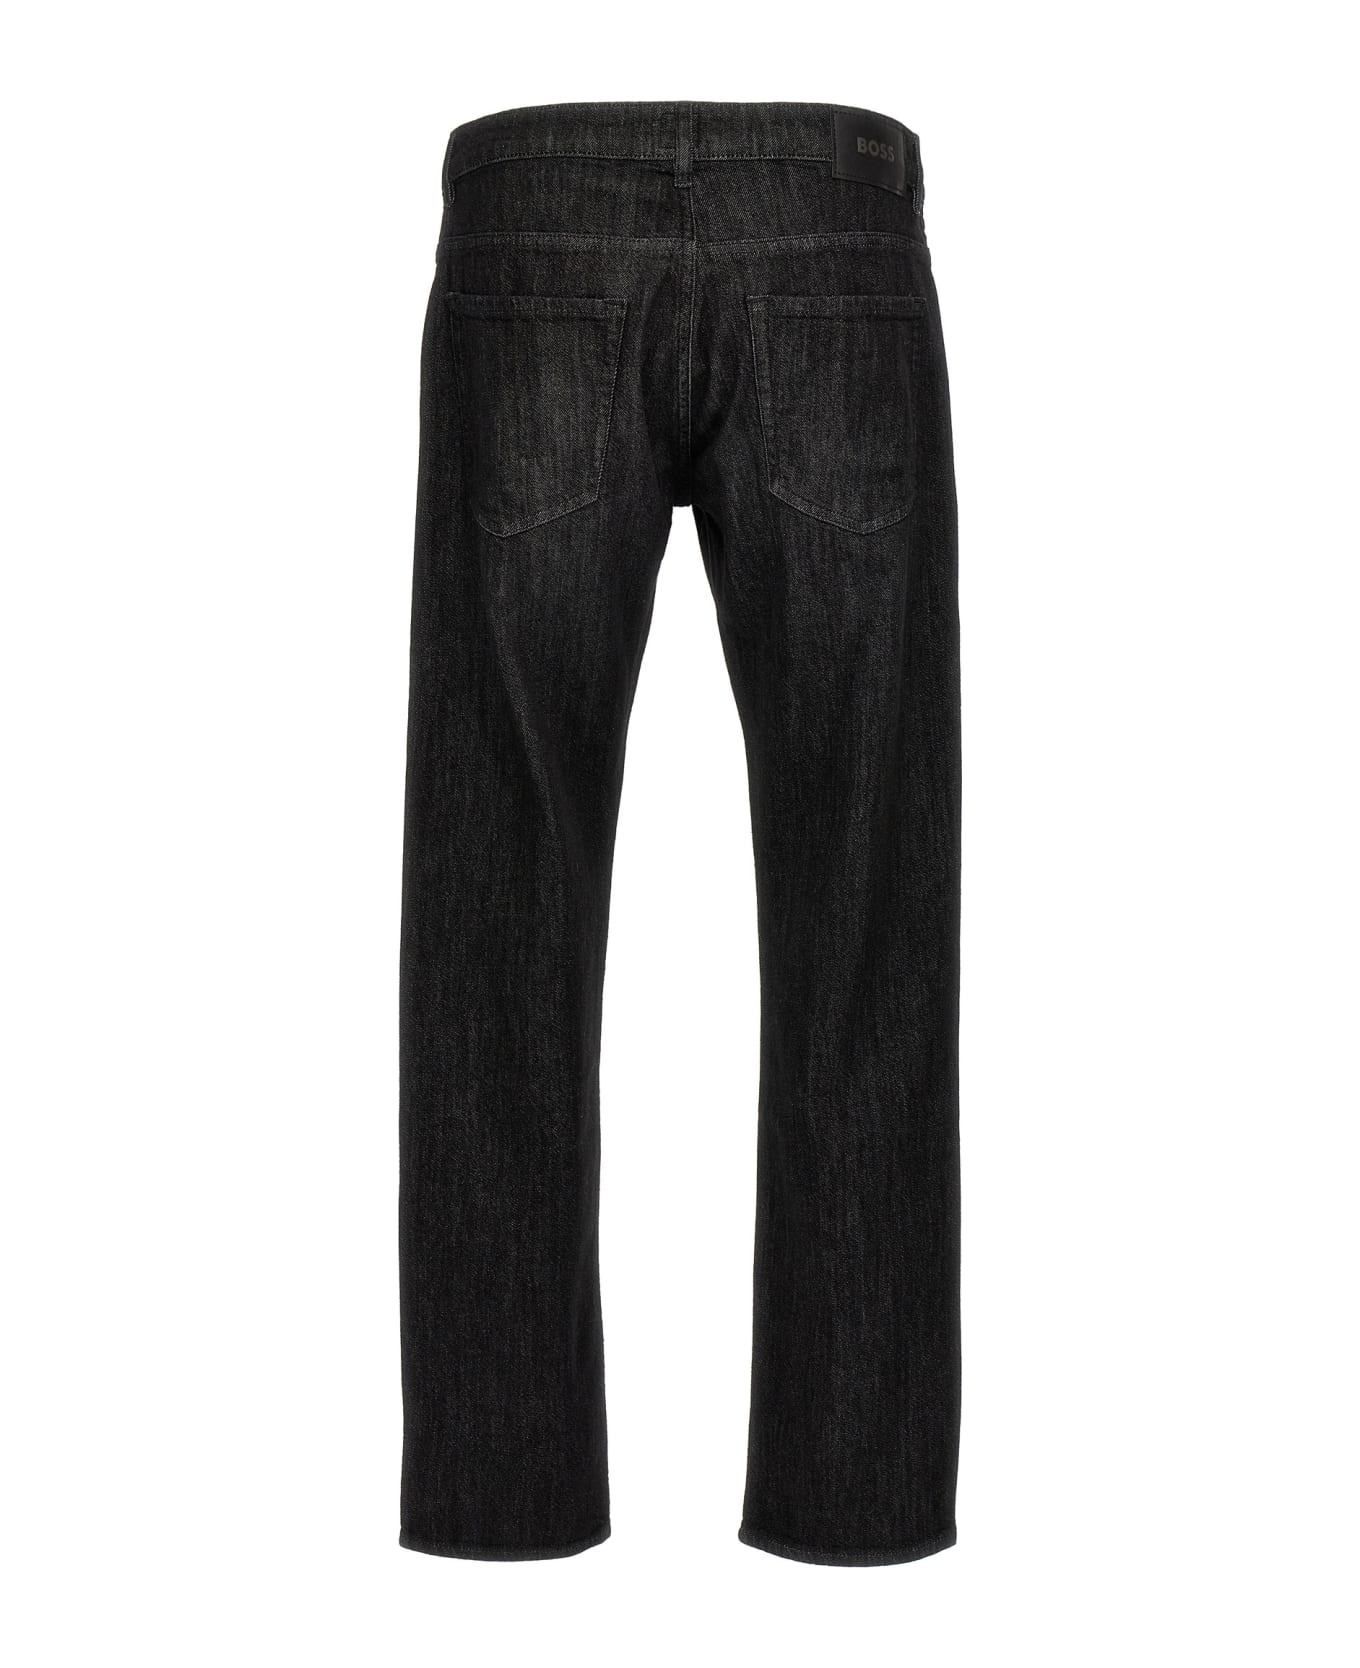 Hugo Boss 'delaware' Jeans - Black  